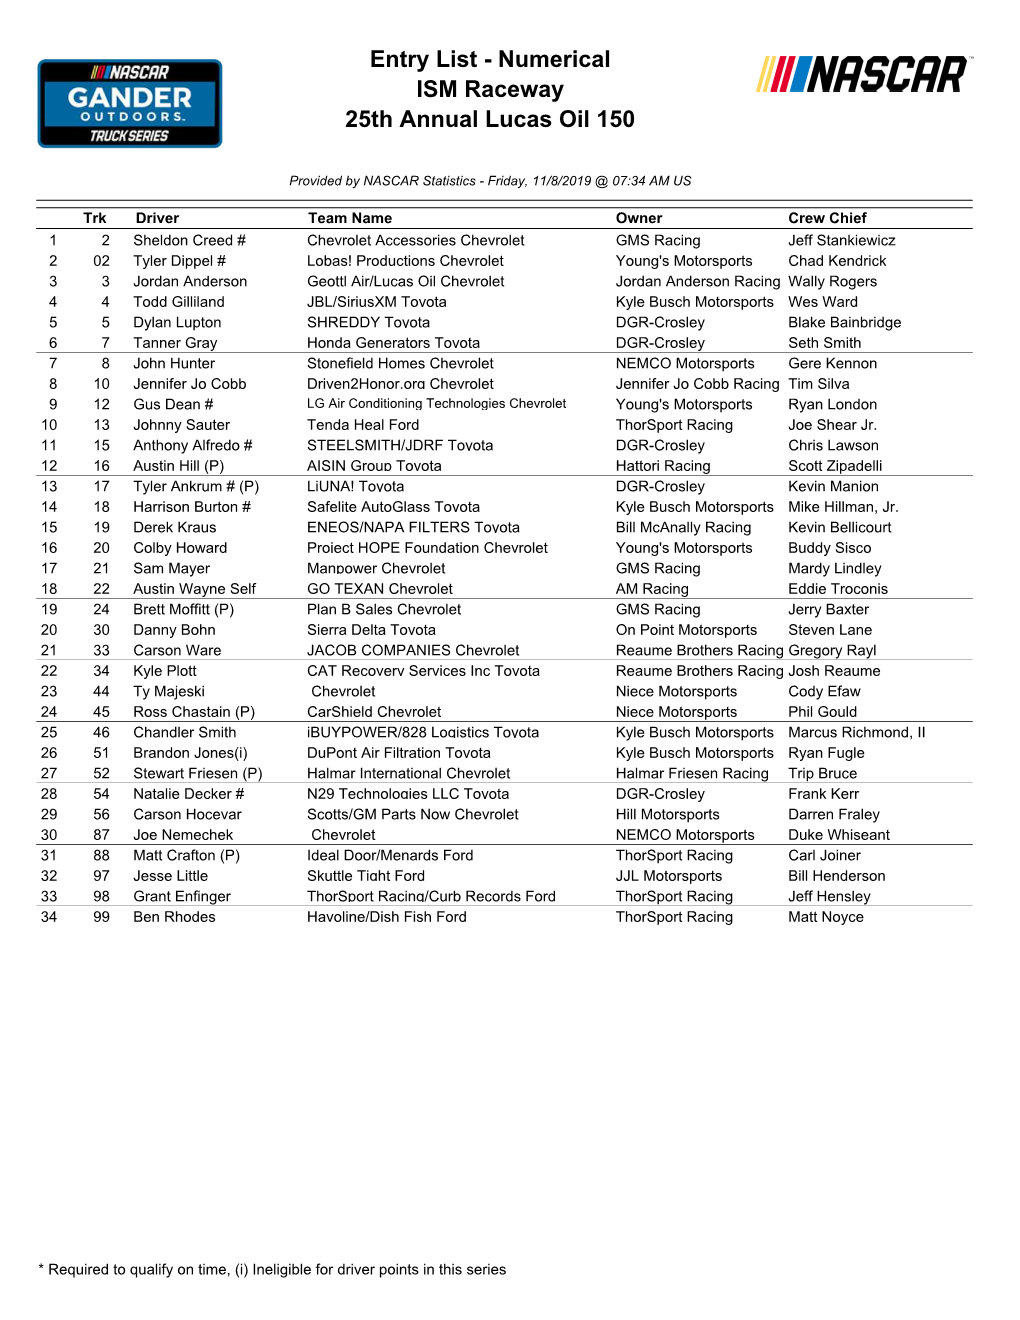 Entry List - Numerical ISM Raceway 25Th Annual Lucas Oil 150